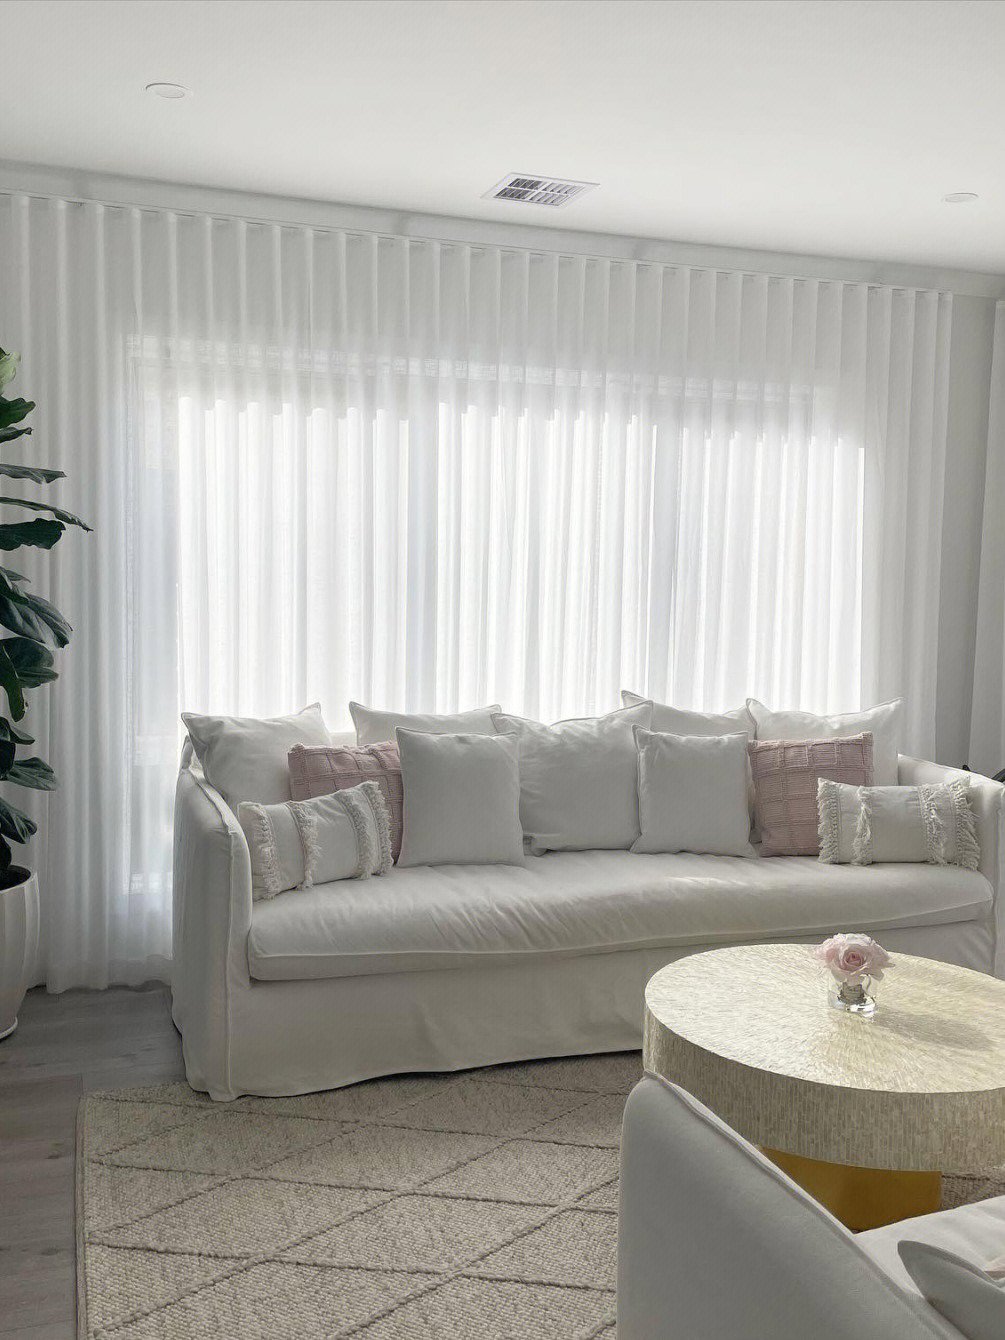 白色沙发很适合搭配原木或竹藤茶几轻松打造出自然舒适的家装风格90